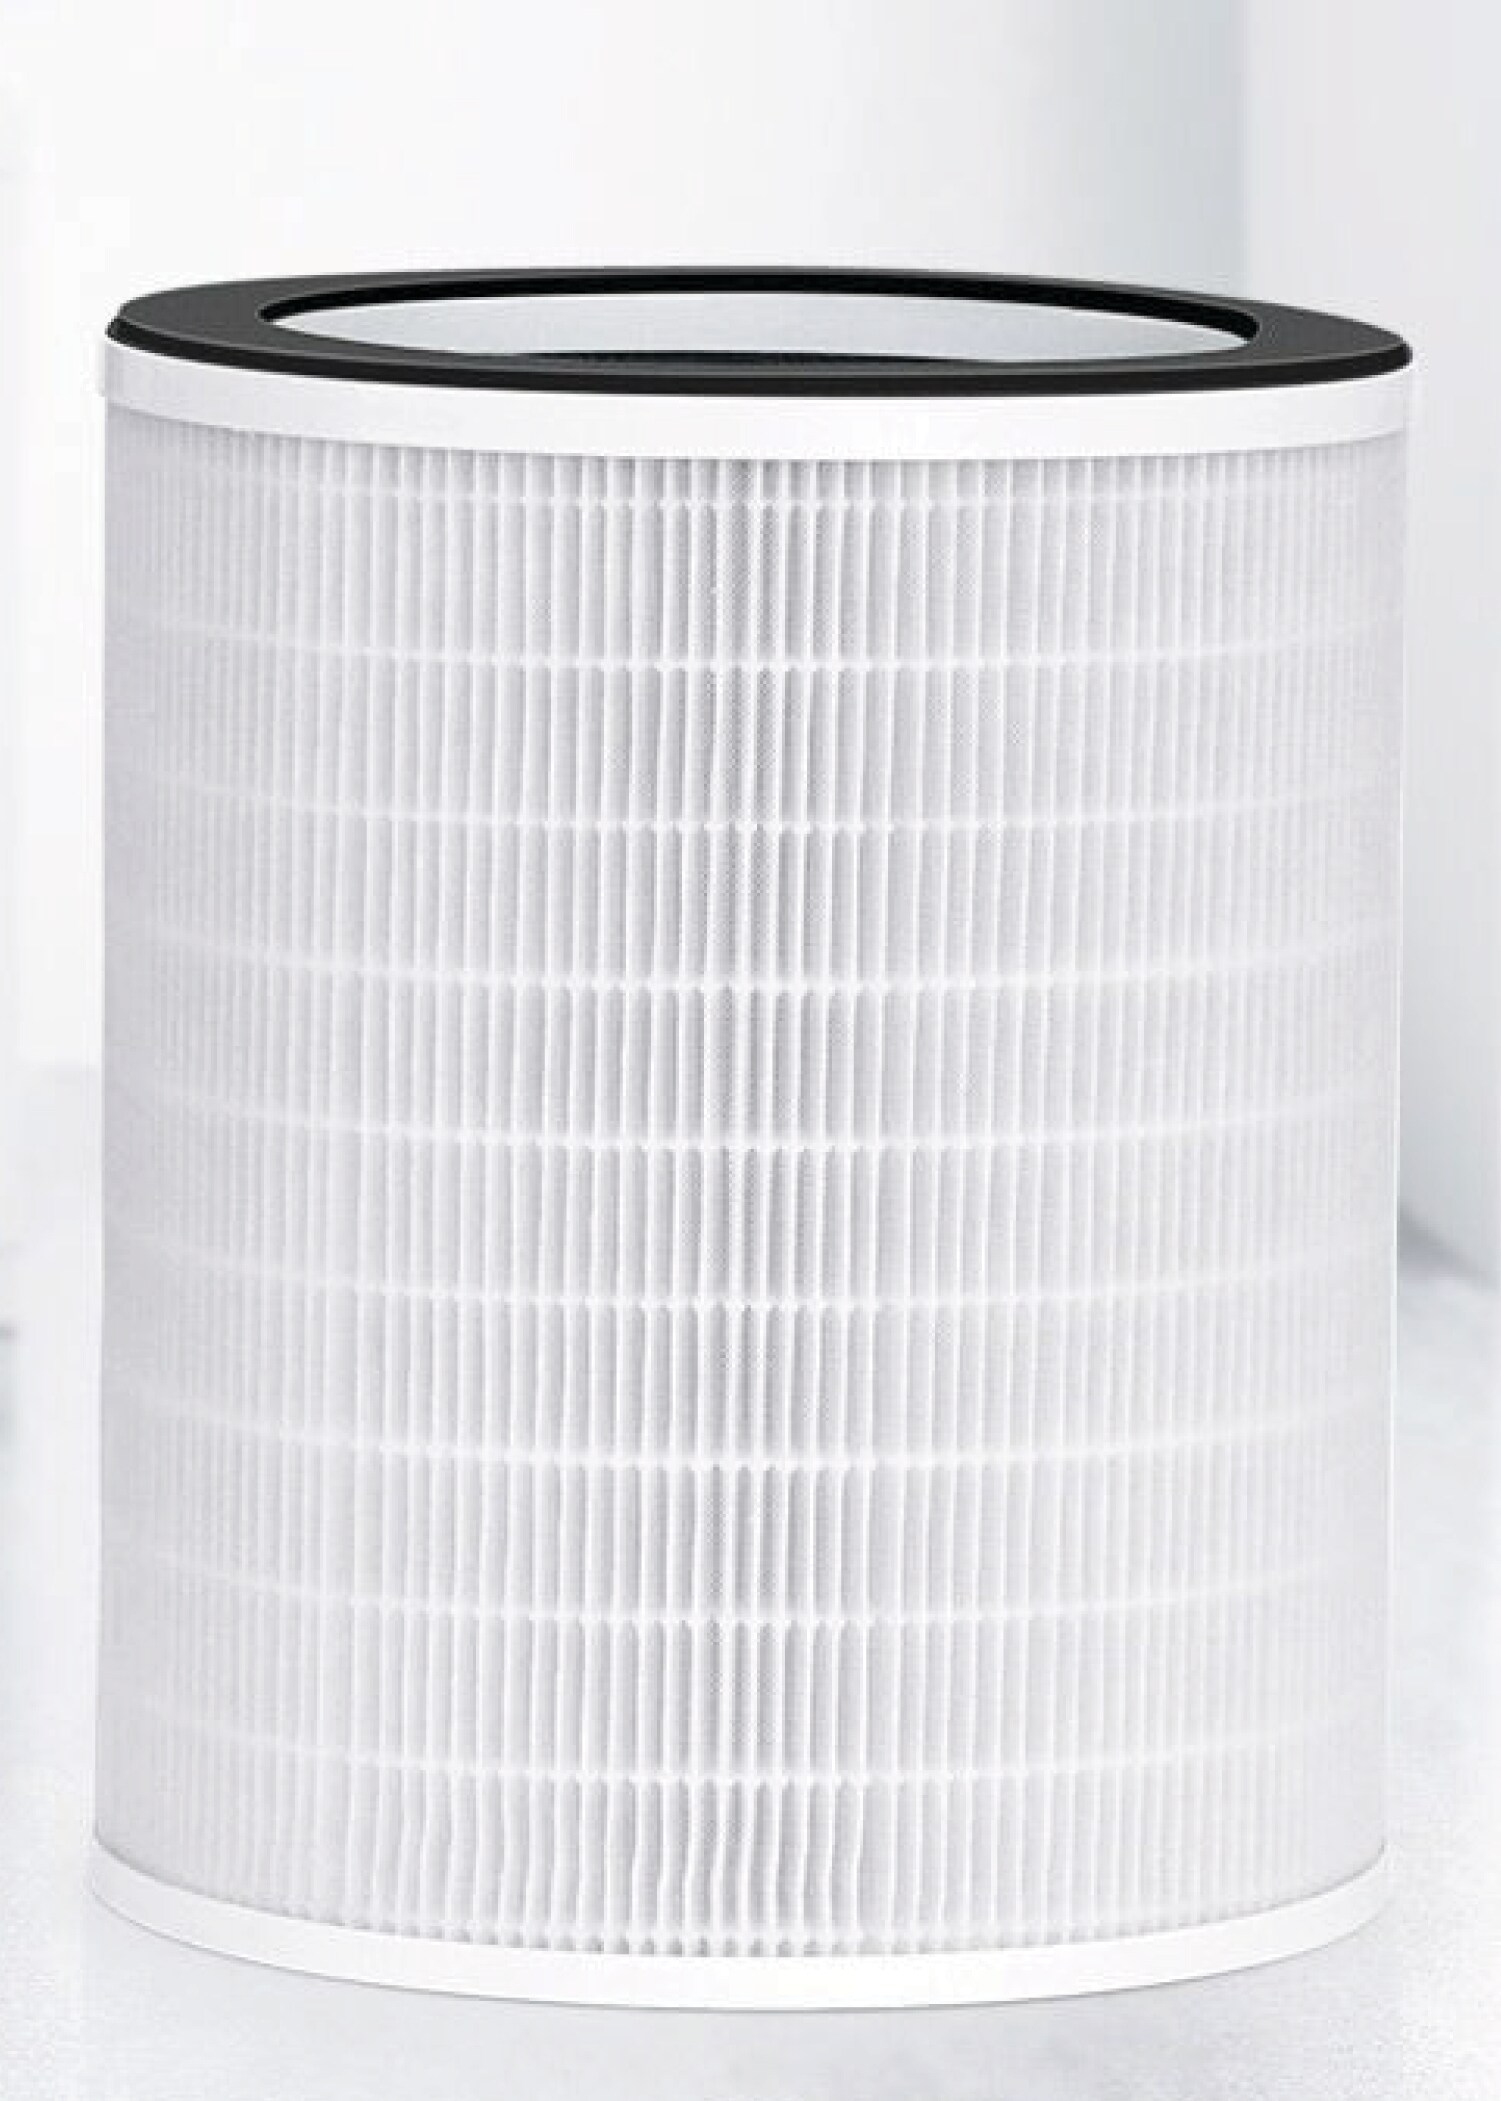 AEROPRO 150 replacement filter - HEPA-certified - Eoleaf